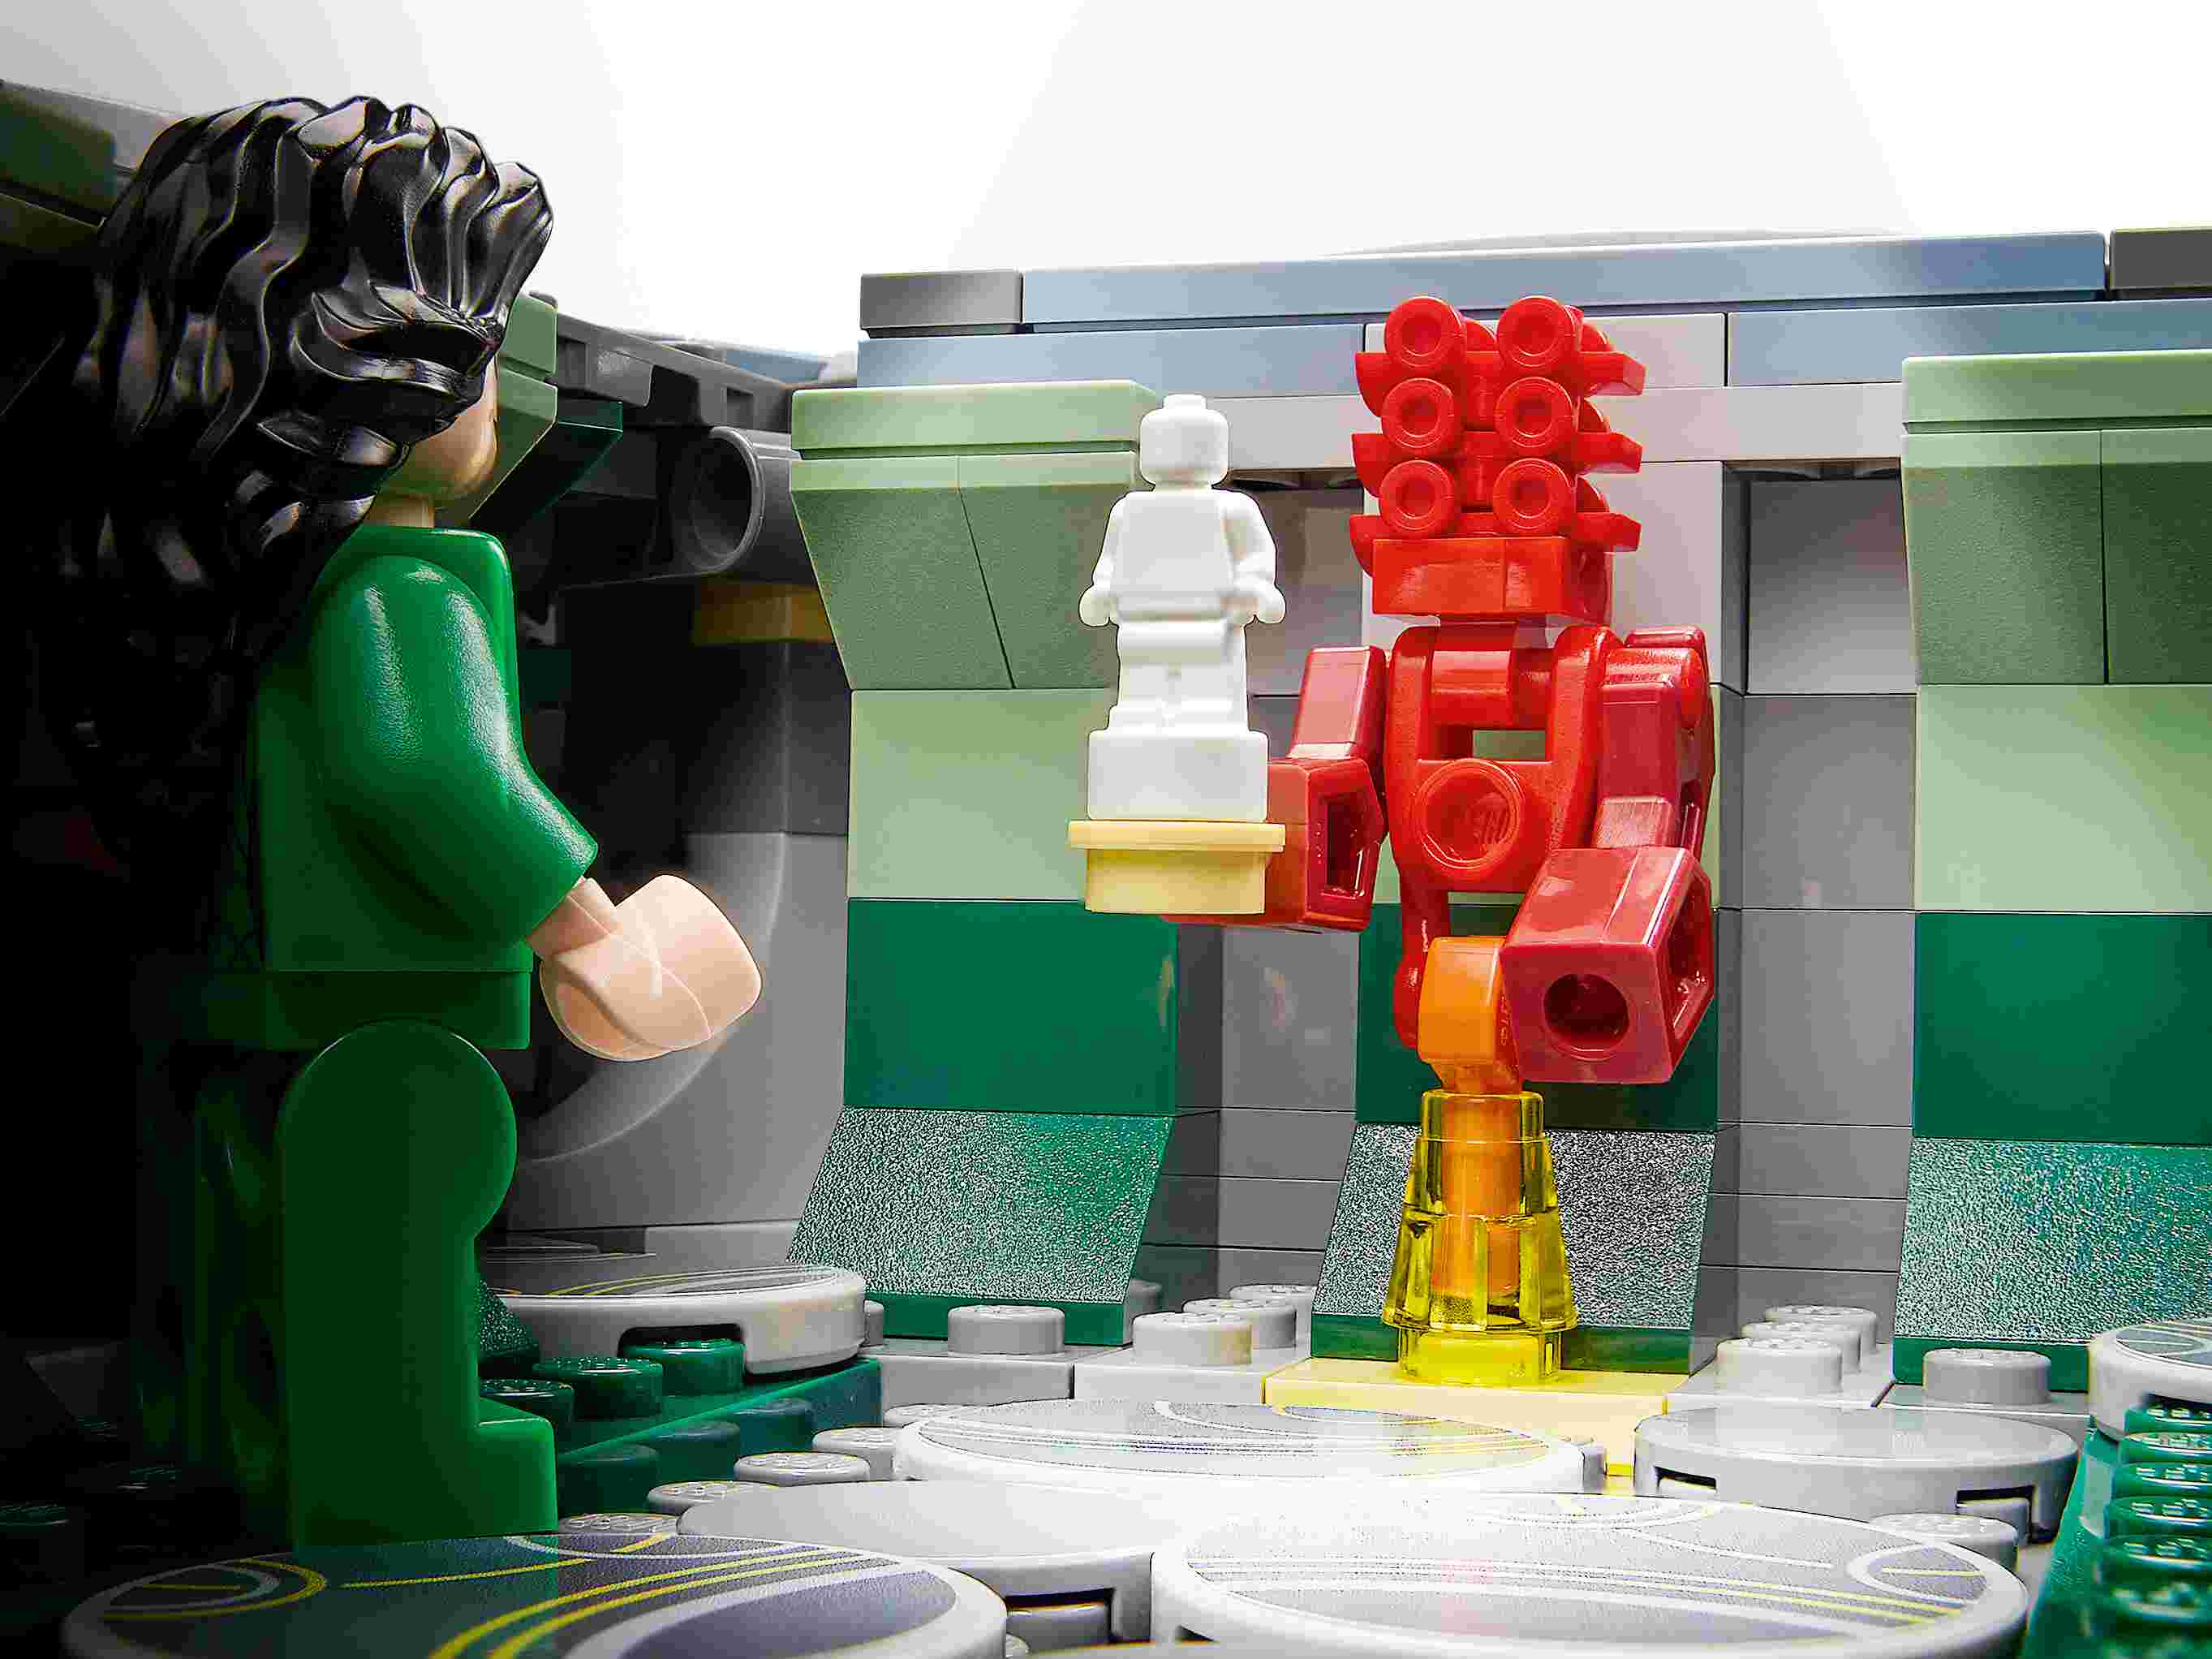 LEGO 76156 Marvel Aufstieg des Domo, Raumschiff aus The Eternals, 6 Minifiguren